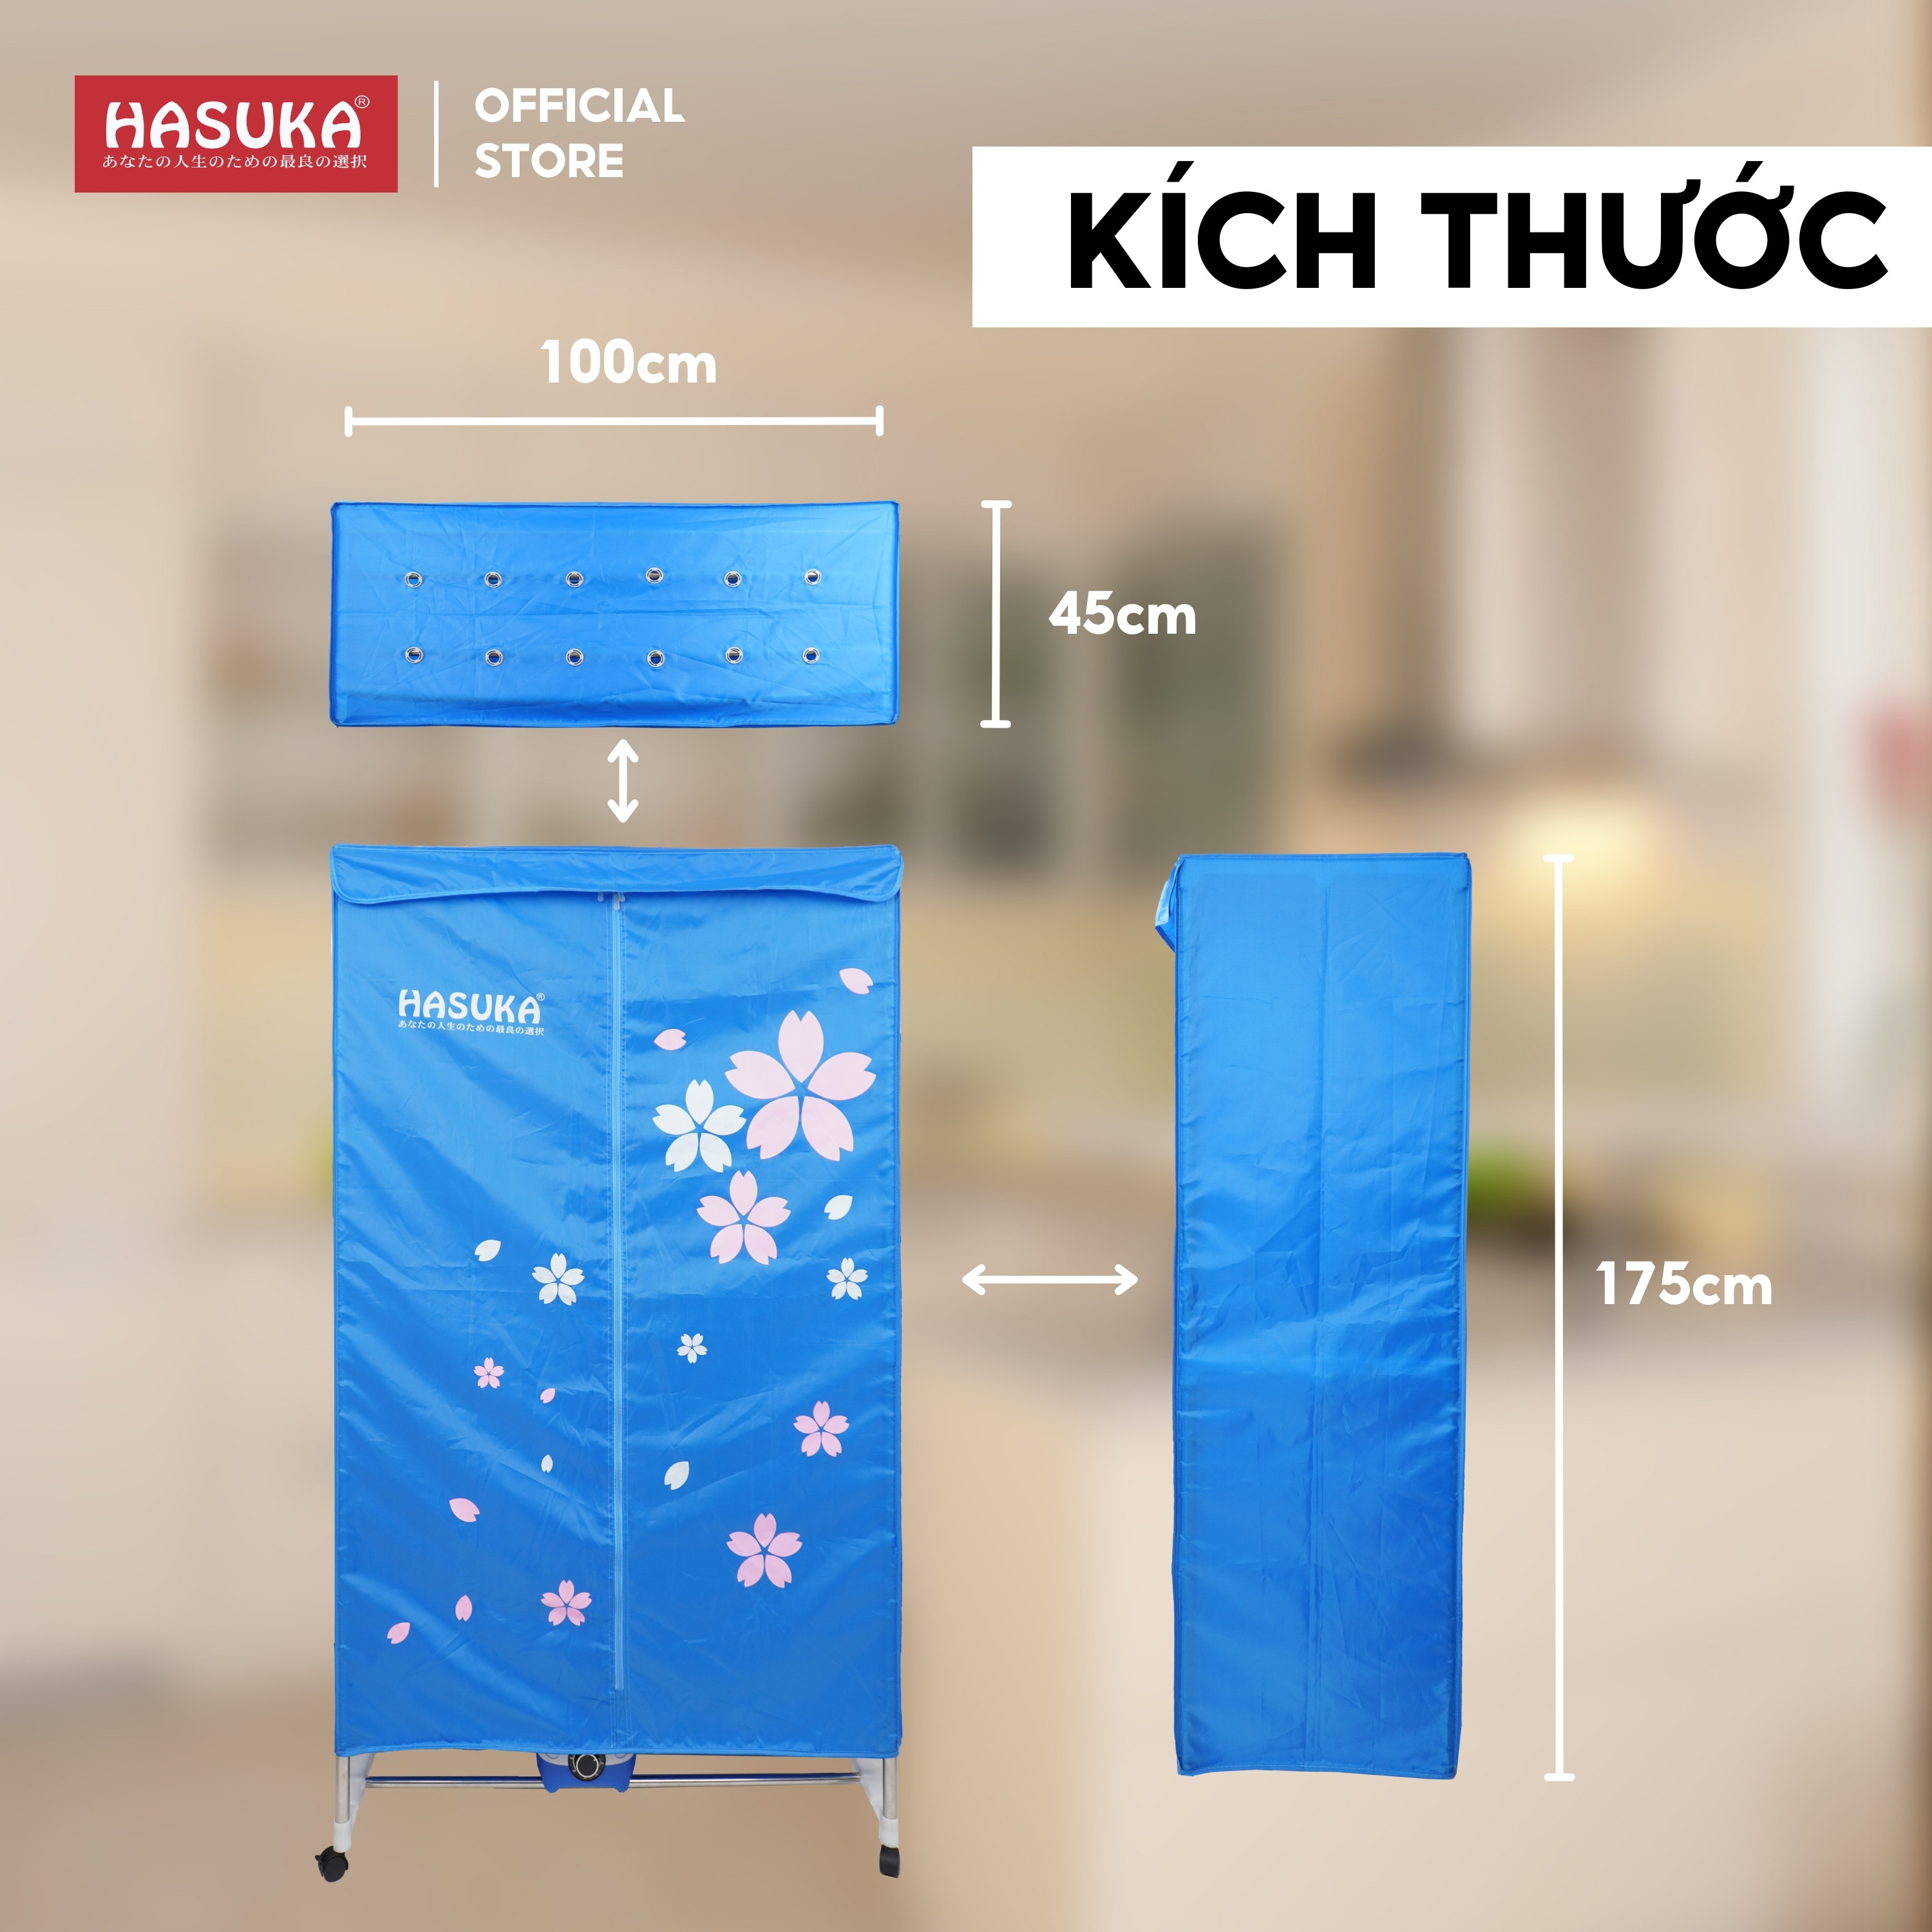 Tủ sấy quần áo HASUKA HSK-116MS Công nghệ sấy cộng hưởng nhiệt PTC tăng khả năng bảo vệ quần áo (BH 12 tháng) - HÀNG CHÍNH HÃNG